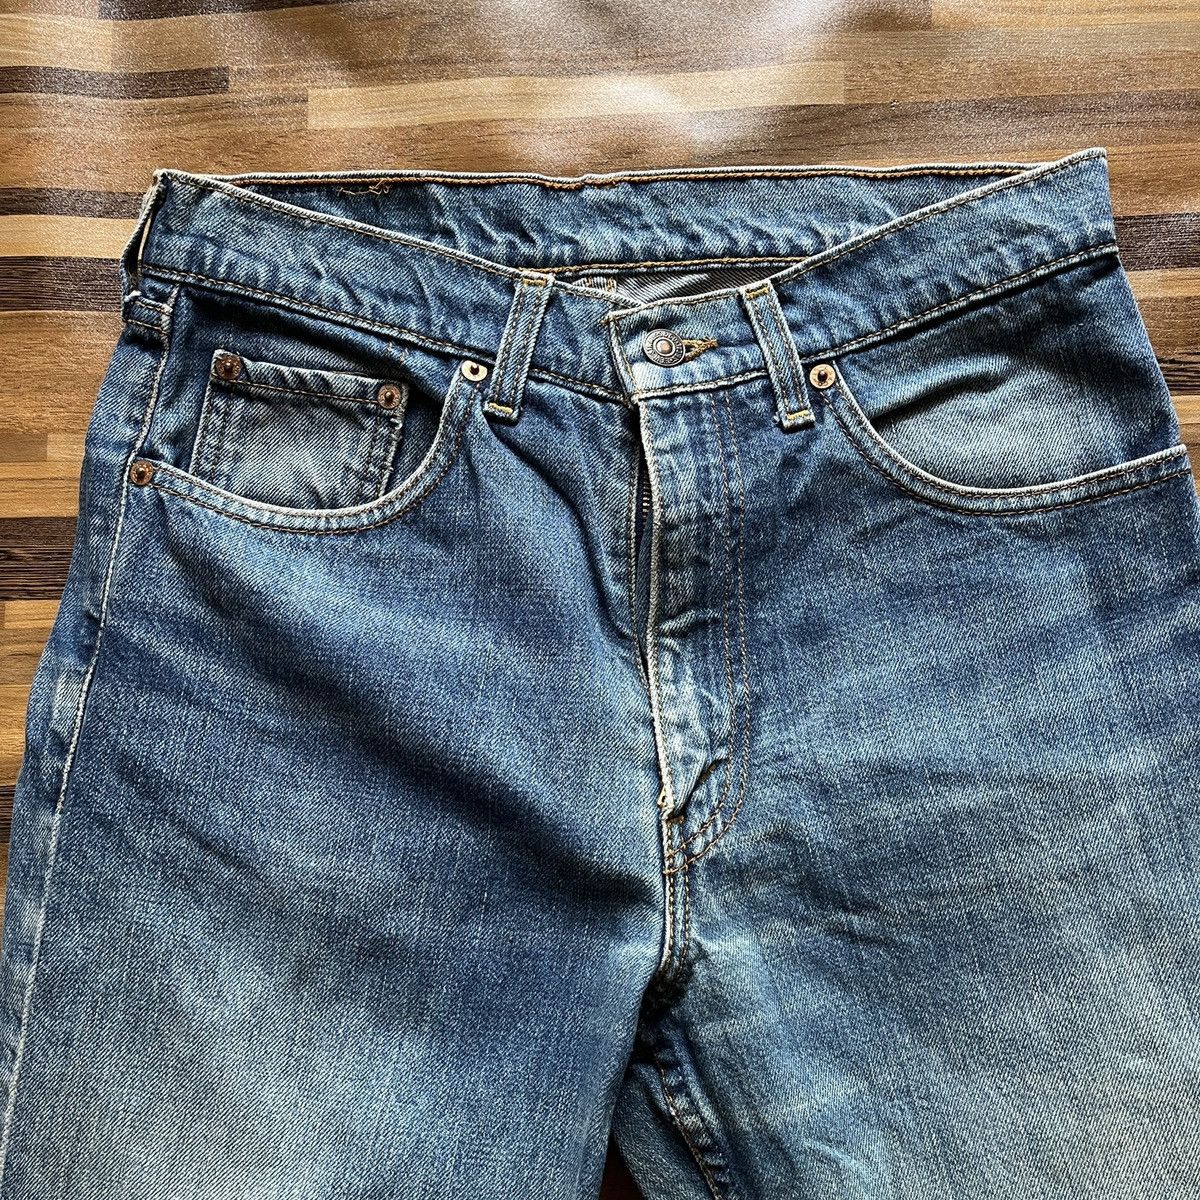 Vintage 1980s Levi's 603 Denim Jeans Straight Cut - 4